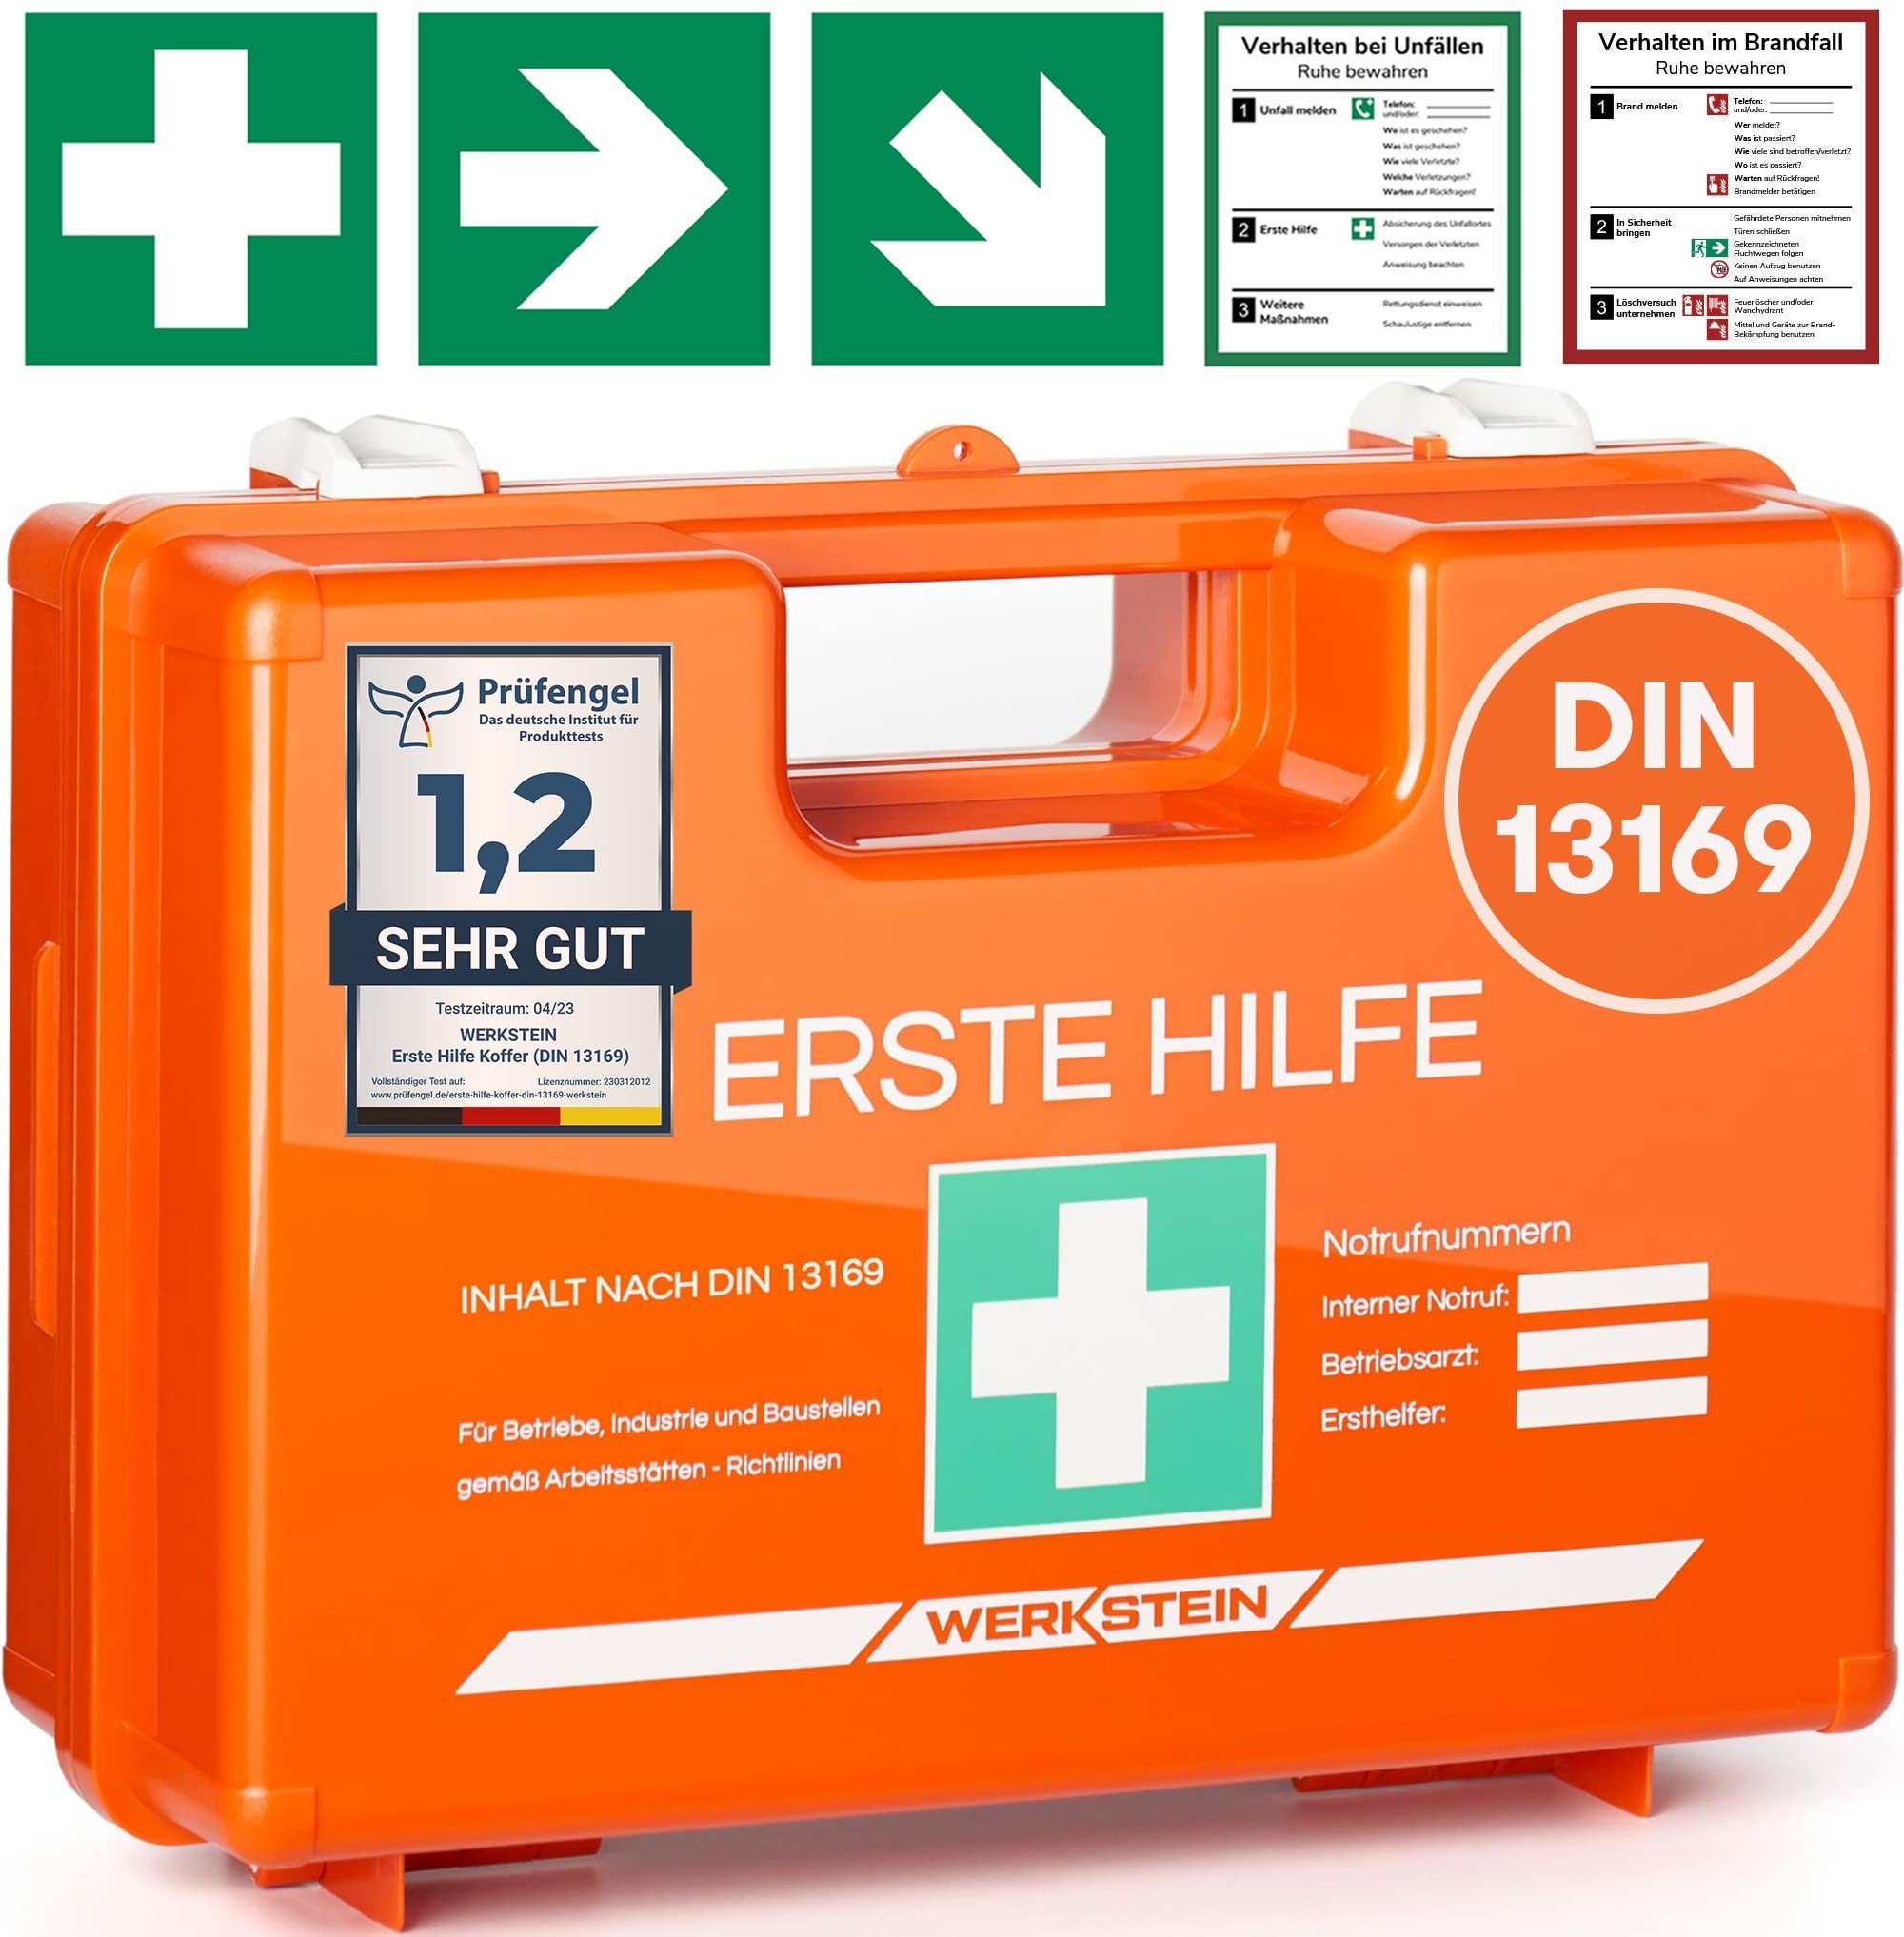 Werkstein Erste-Hilfe-Koffer, Mit Inhalt nach DIN 13169:2021